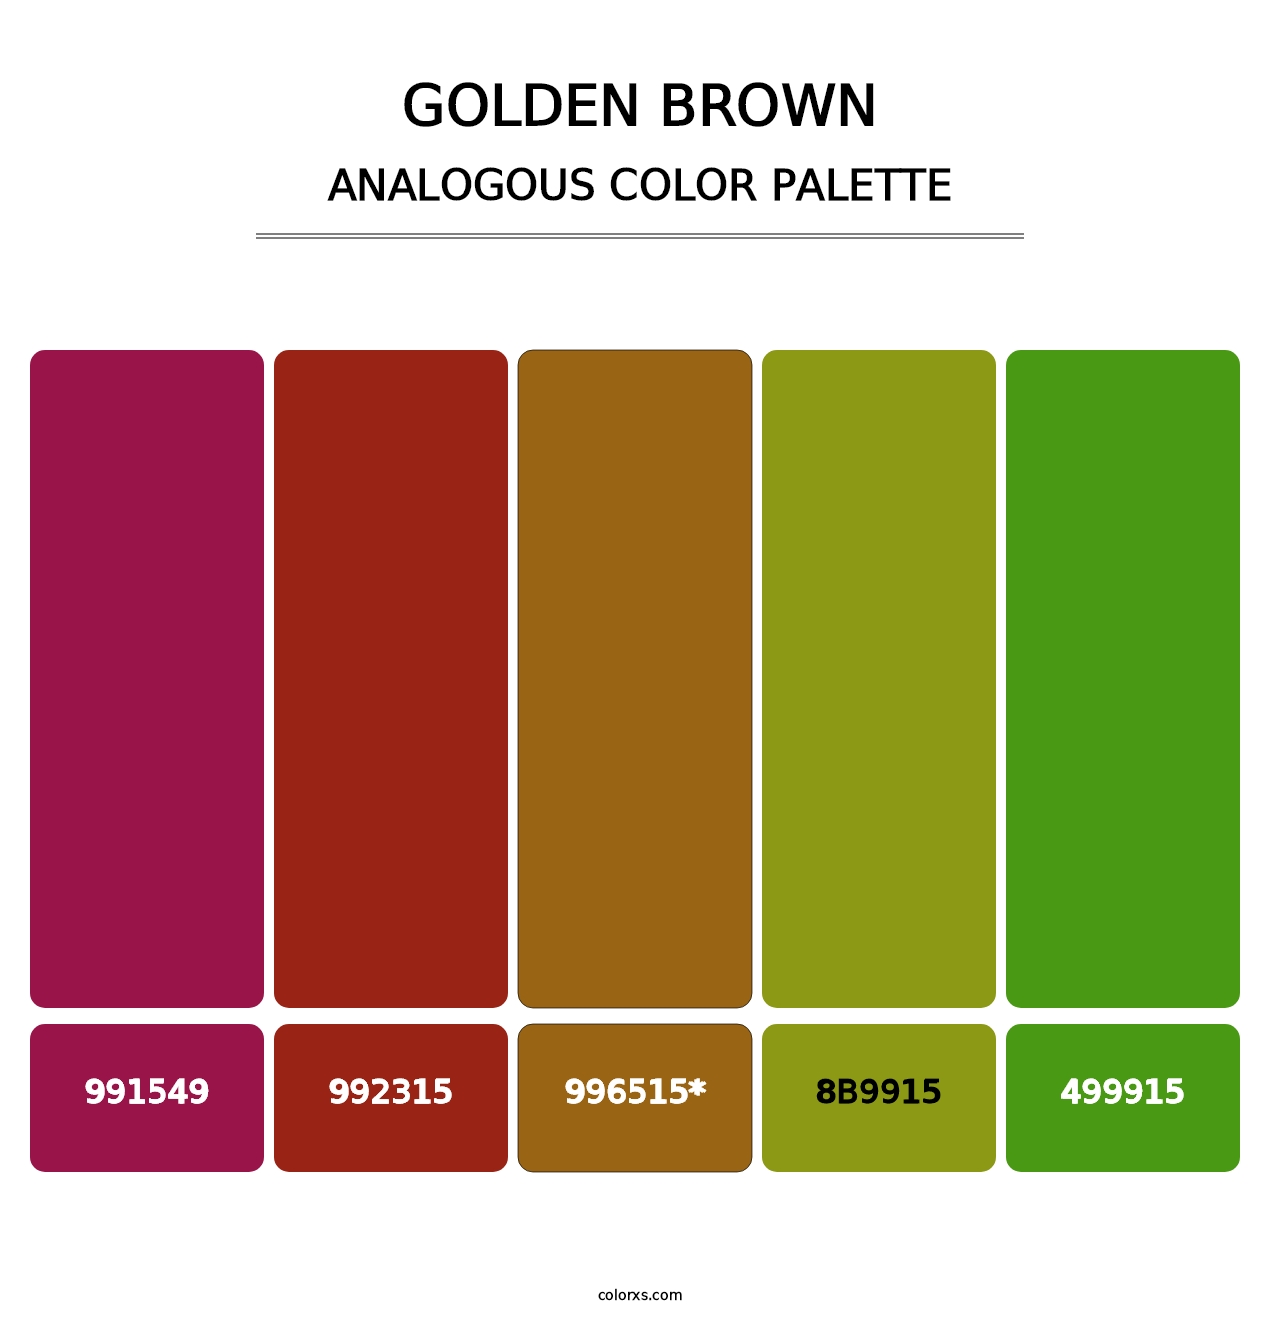 Golden brown - Analogous Color Palette